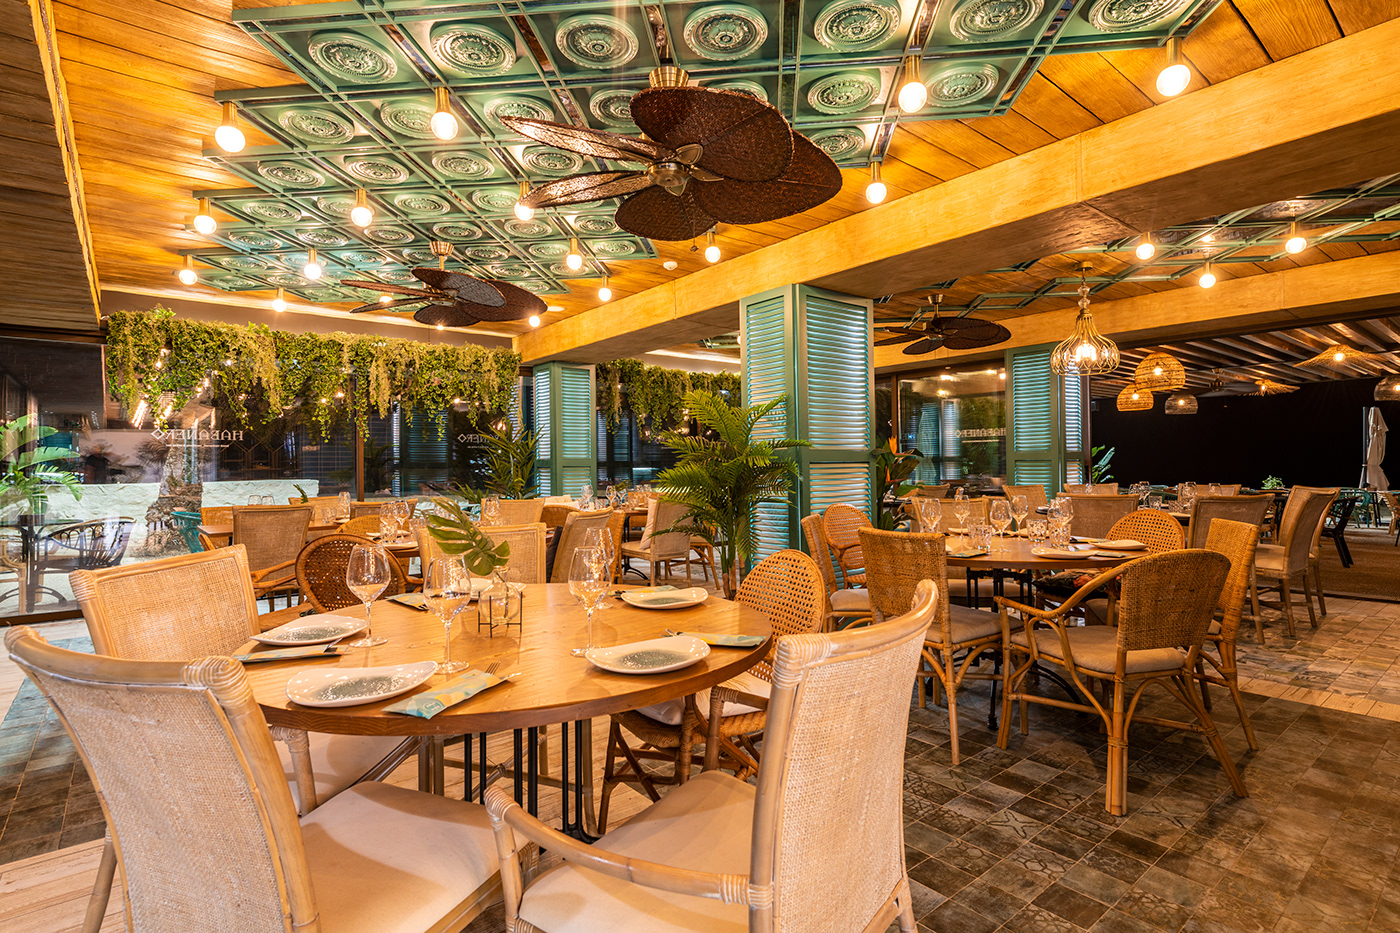 bar beach club habanero Interior Interiorismo restaurant